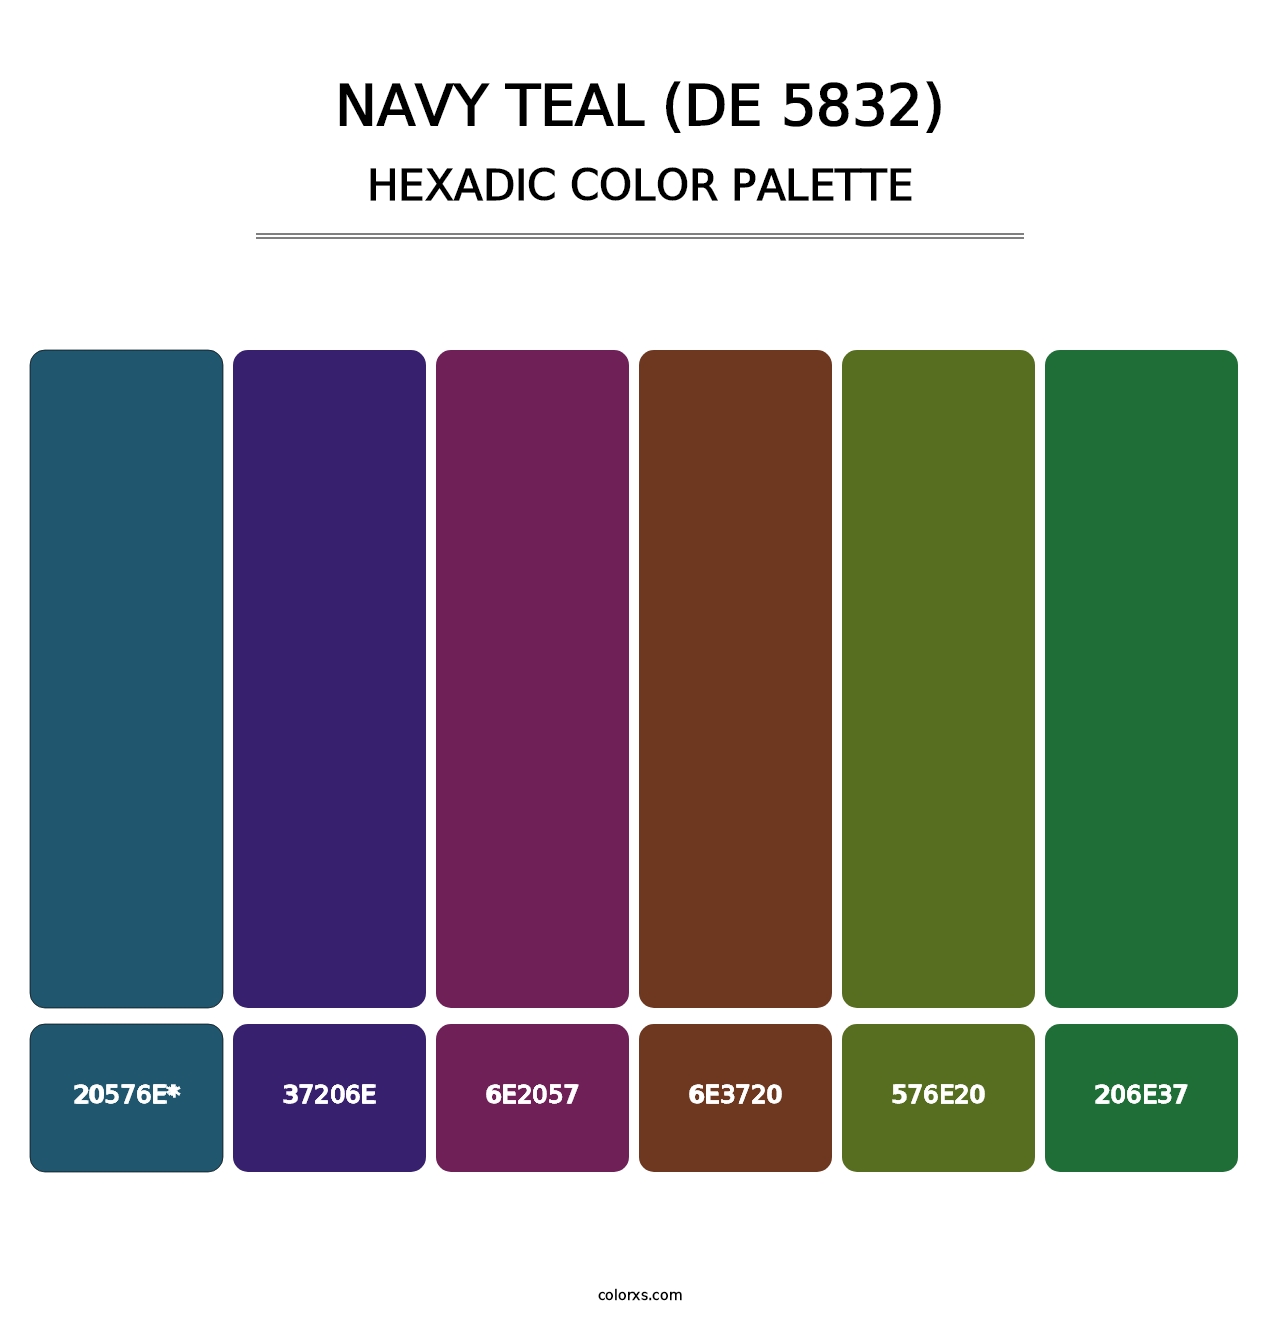 Navy Teal (DE 5832) - Hexadic Color Palette